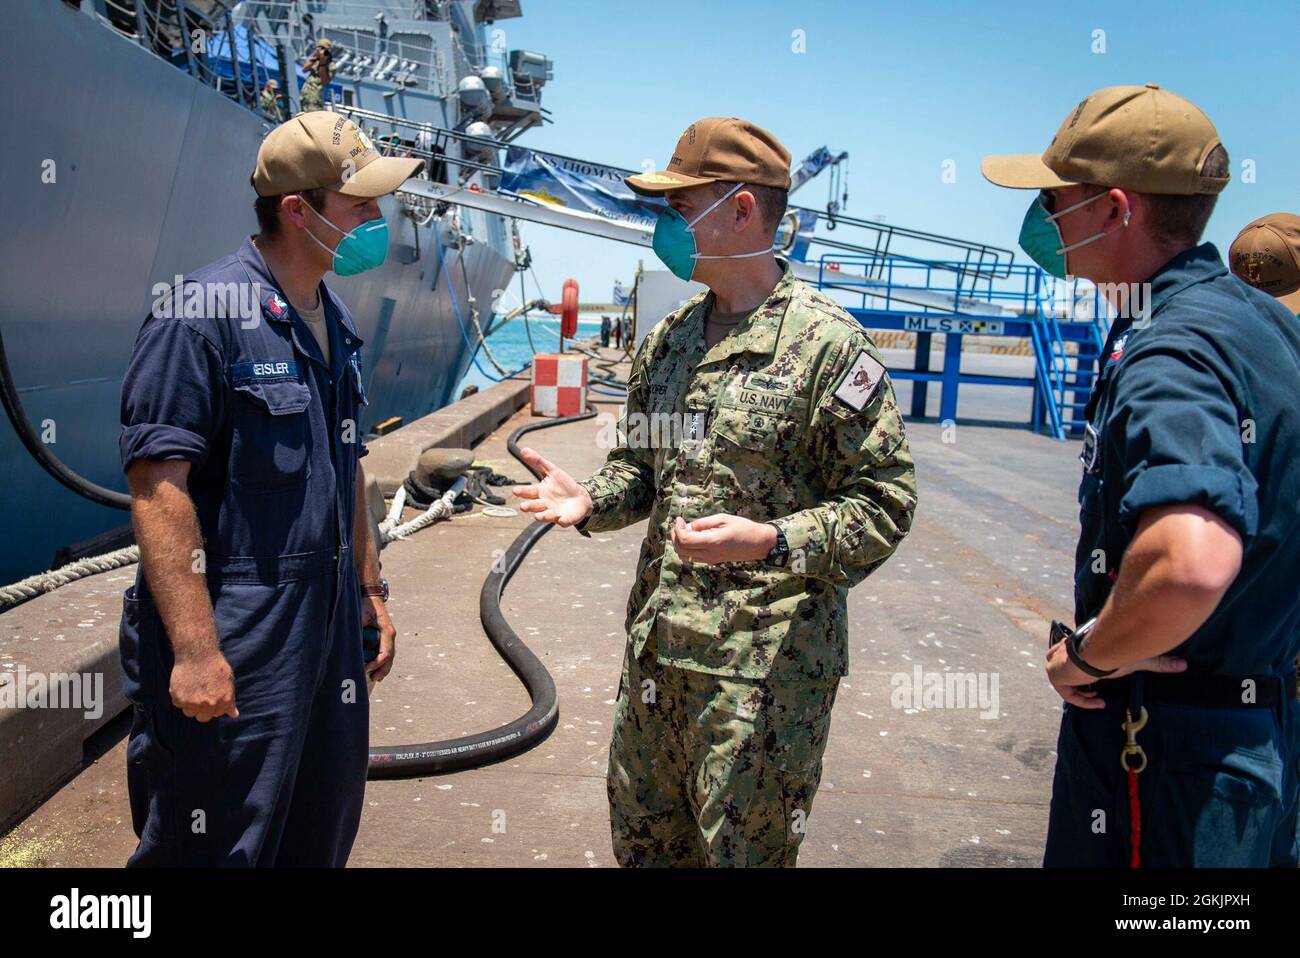 210506-N-VG727-1016 MANAMA, Bahrein (6 de mayo de 2021) Vice ADM. Brad Cooper, comandante del Comando Central de las Fuerzas Navales de los Estados Unidos (NAVCENT), la Flota de los Estados Unidos 5th y las Fuerzas Marítimas Combinadas (CMF), habla con Nicholas Geisler, de la Clase 1st de Boatswain, a la izquierda, Y Mate 2nd Class Dillon Sharer de Boatswain, asignado al destructor de misiles guiados USS Thomas Hudner de la clase Arleigh Burke (DDG 116), durante una llamada en el puerto en Manama, Bahrein, mayo de 6. Thomas Hudner está desplegado en el área de operaciones de la Flota de los Estados Unidos 5th y realizando operaciones navales para asegurar la estabilidad marítima y la seguridad en la Región Central, conectándose a TH Foto de stock